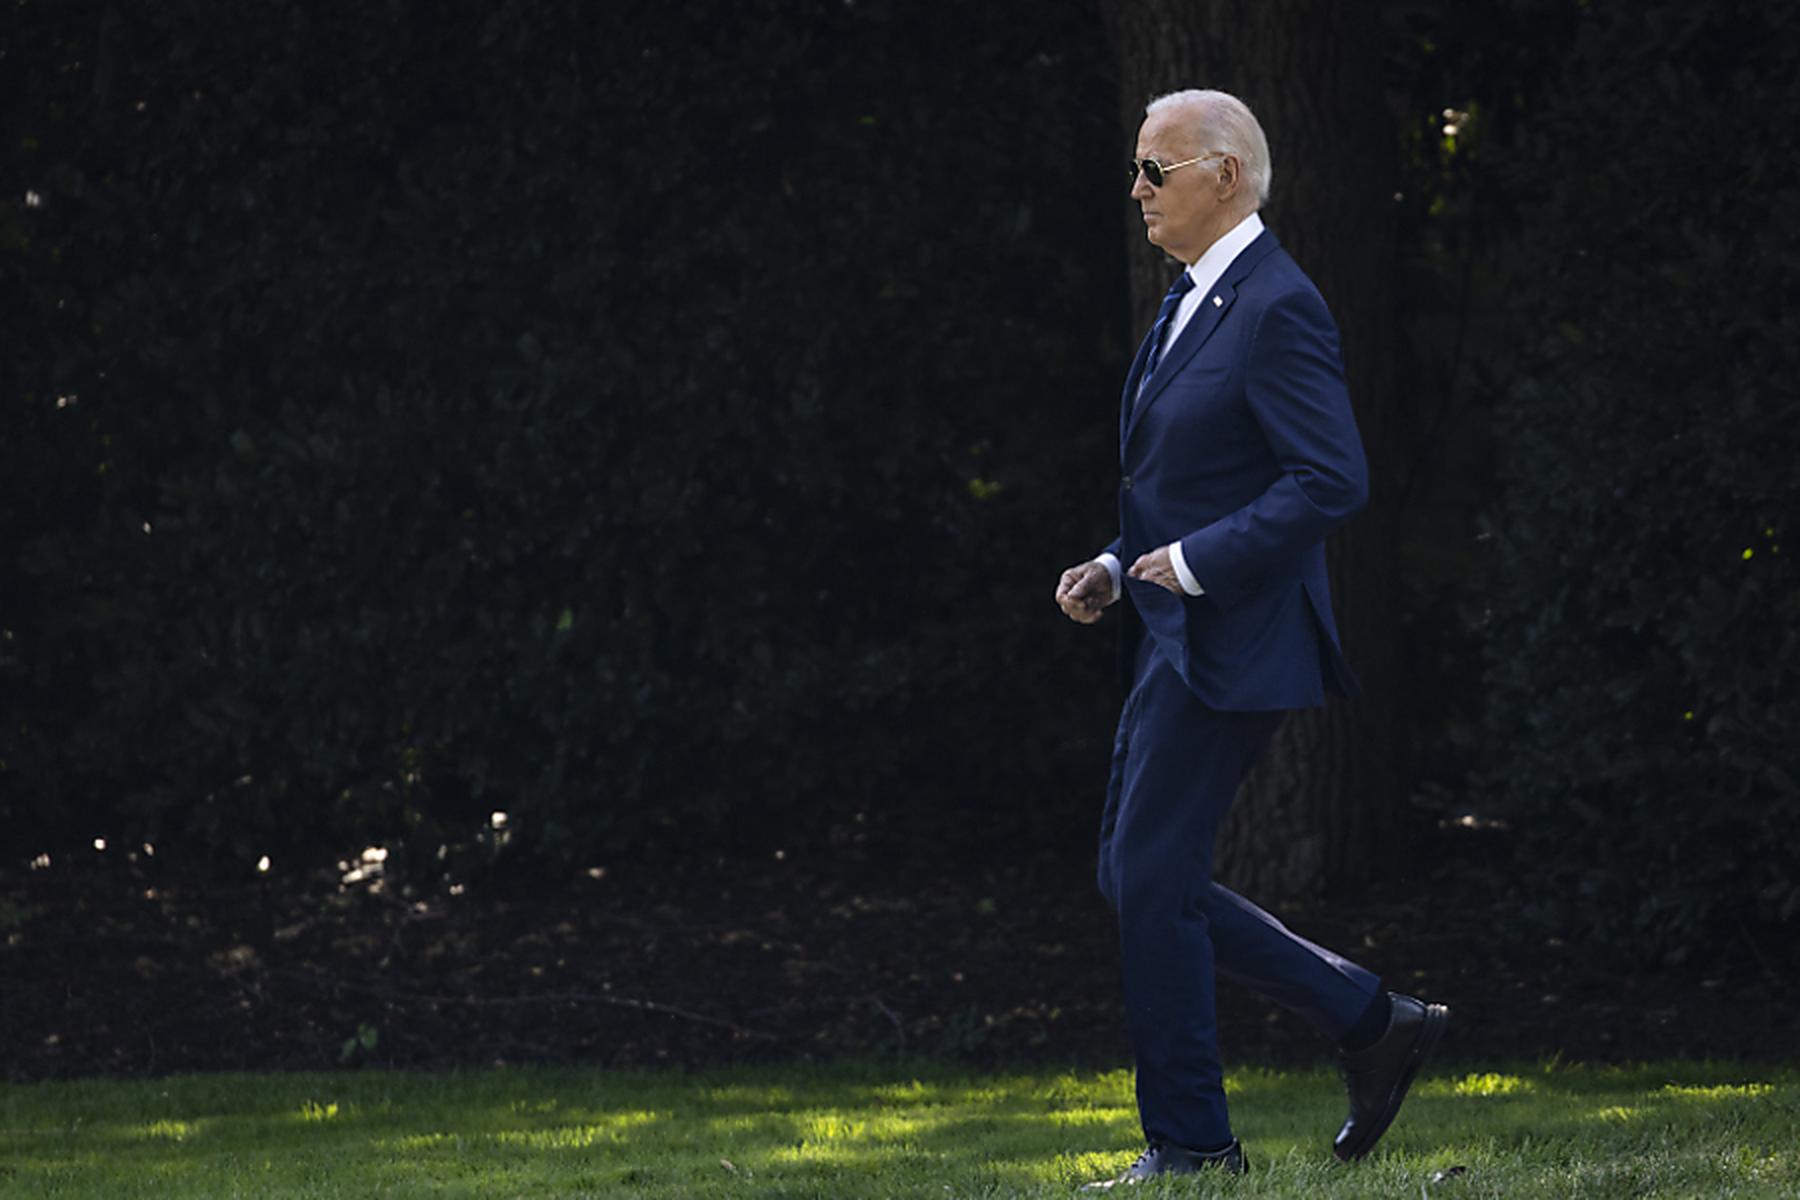 Washington: Biden hält weiter an Präsidentschaftskandidatur fest